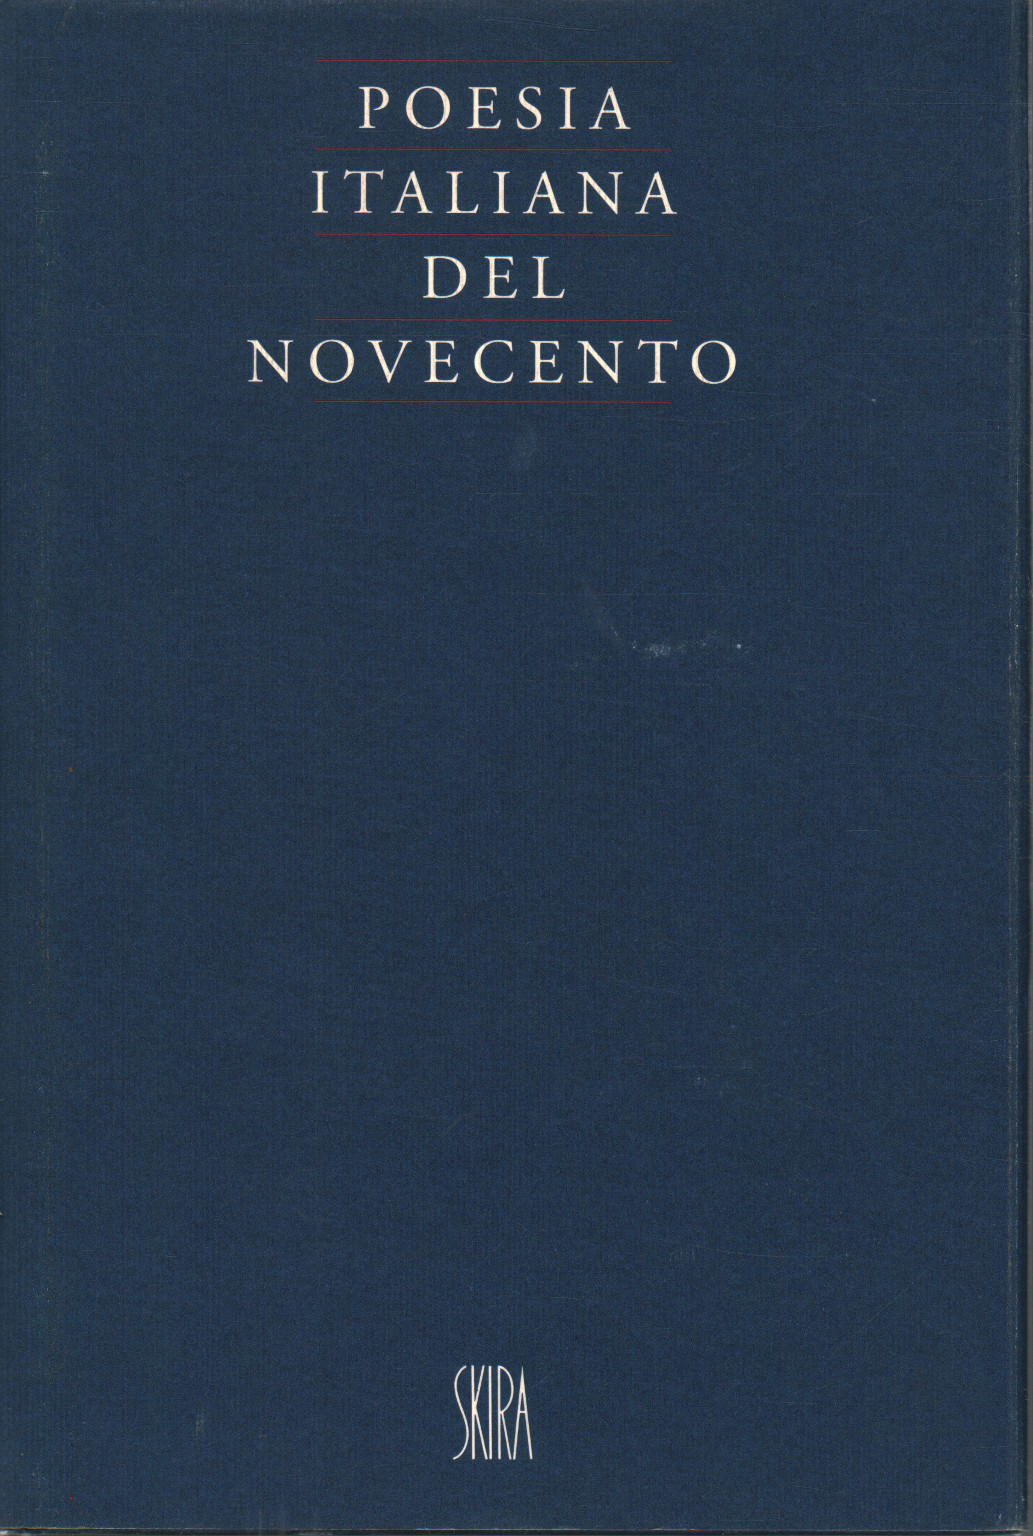 La poesía en italiano del siglo Xx, s.una.